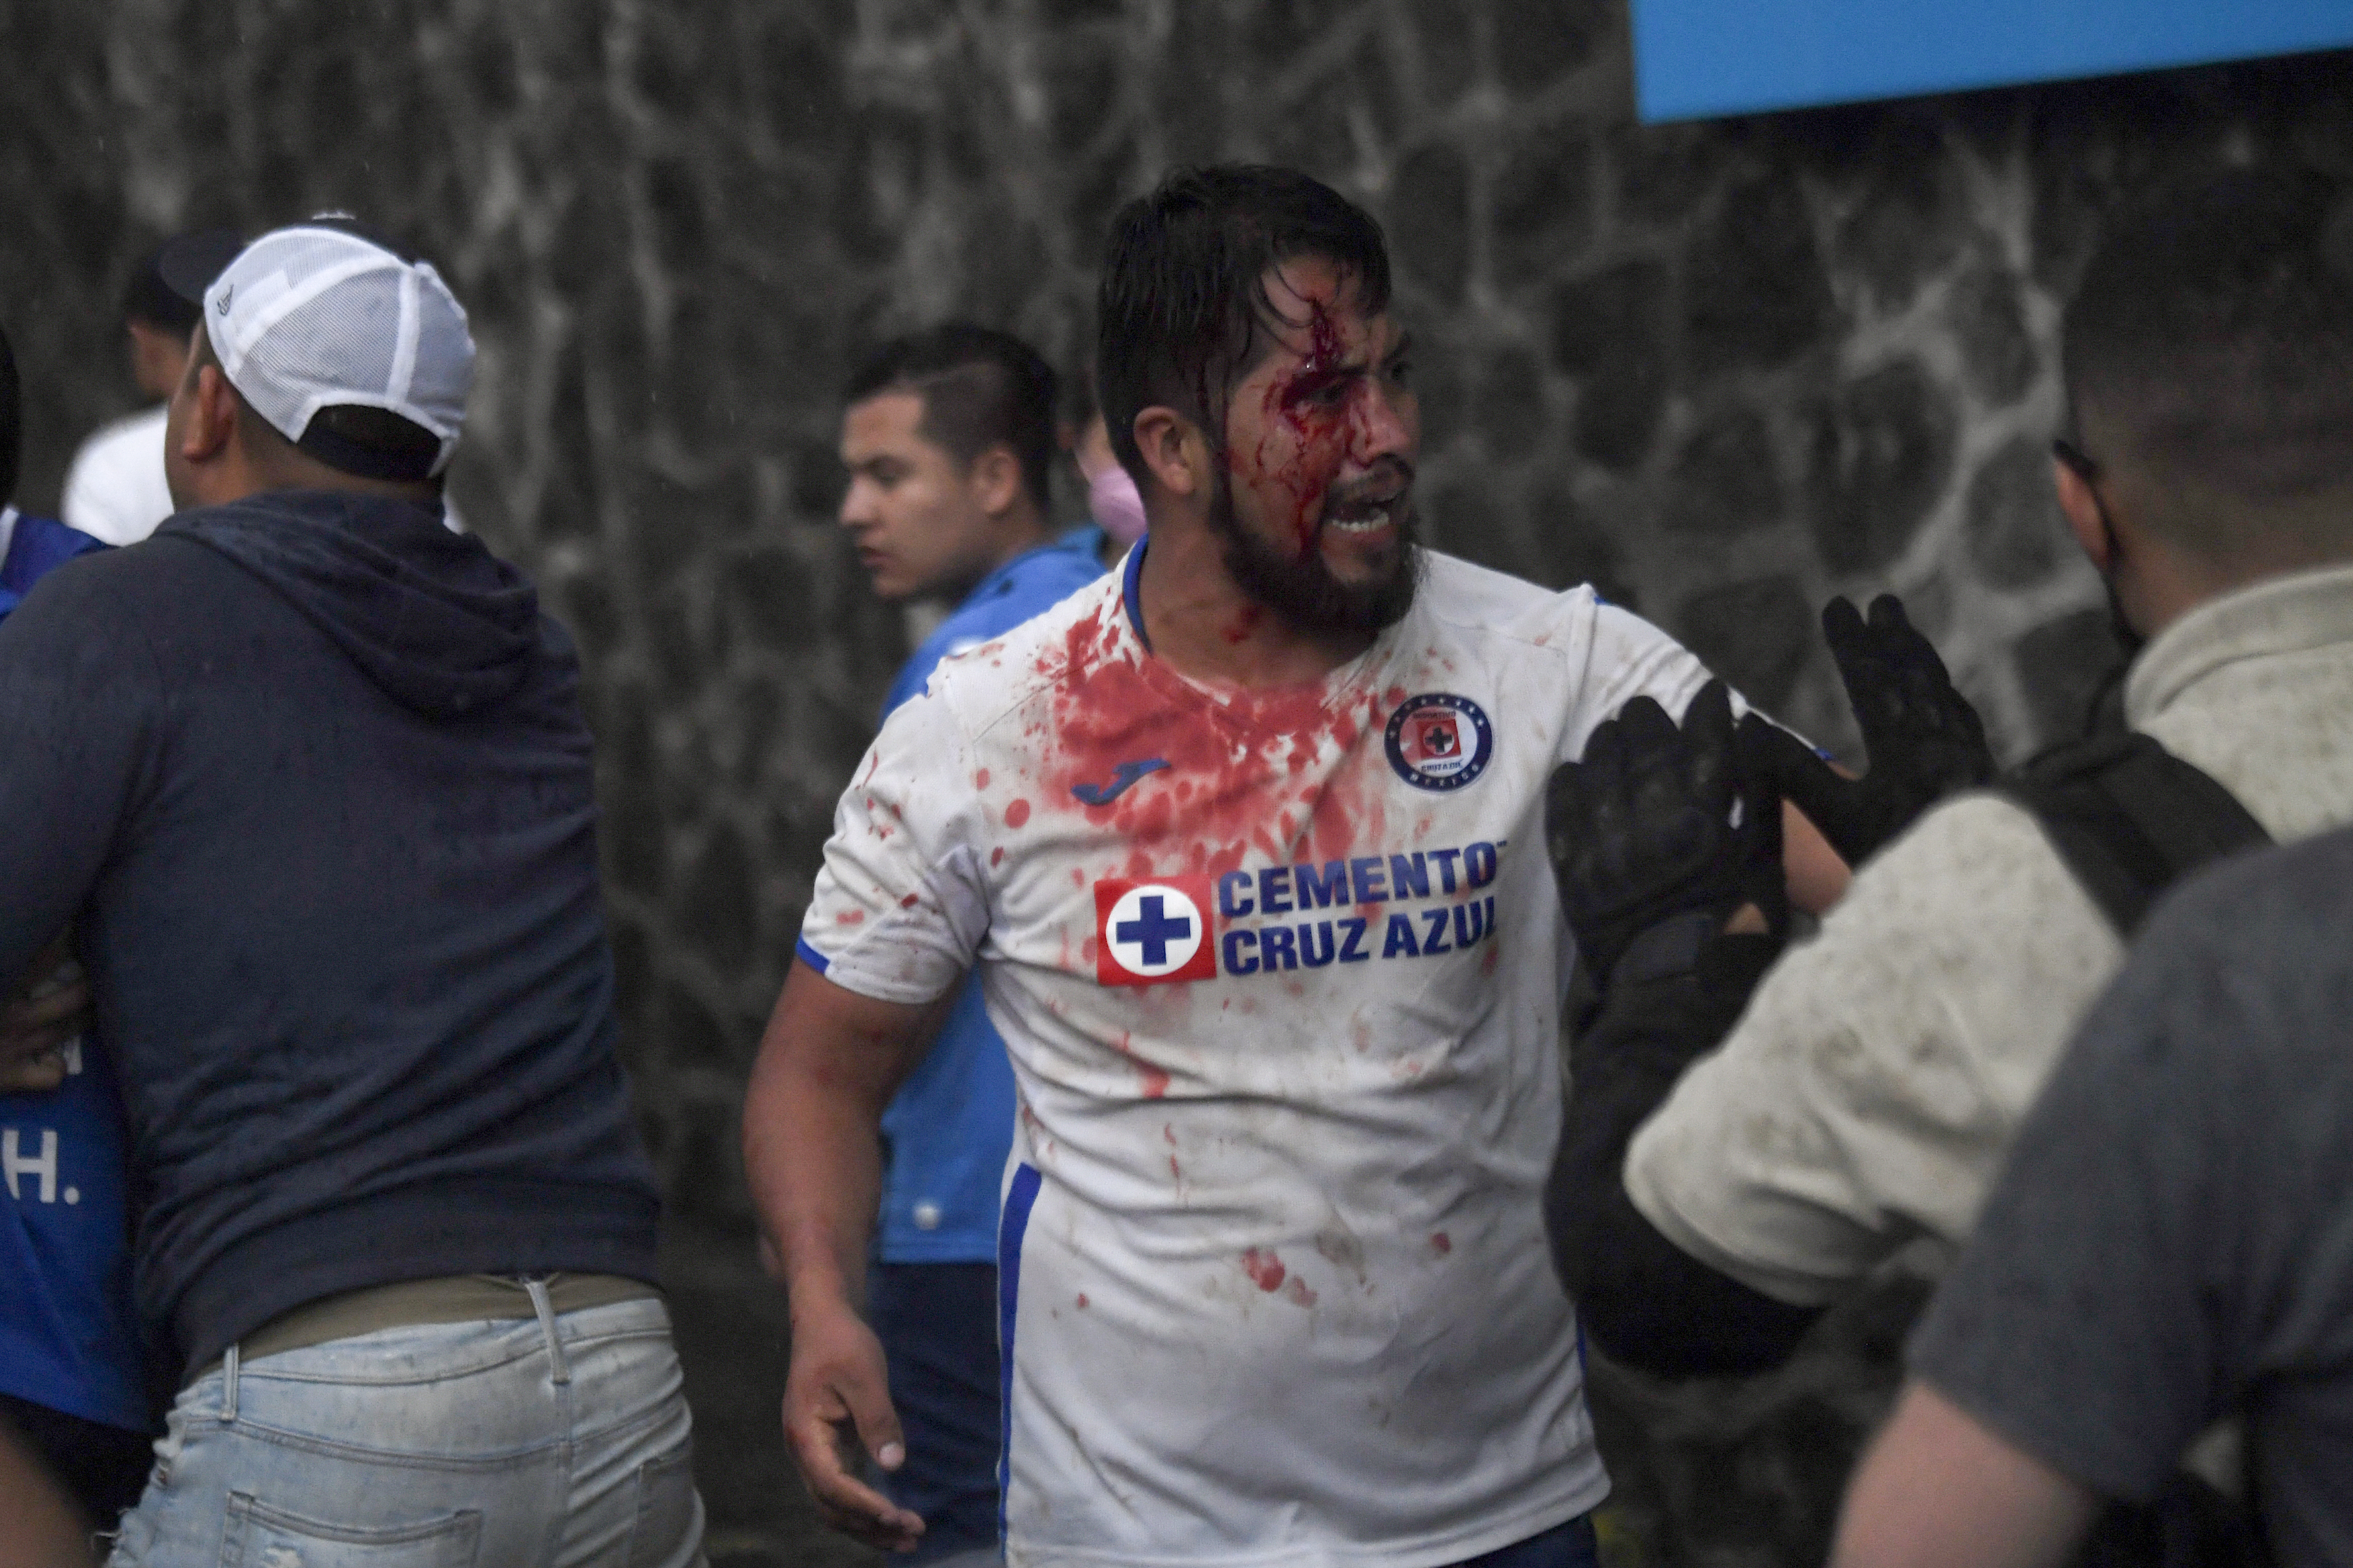 Un hombre fue golpeado y apareció lleno de sangre en fotografías y videos (Foto: PEDRO PARDO / AFP)